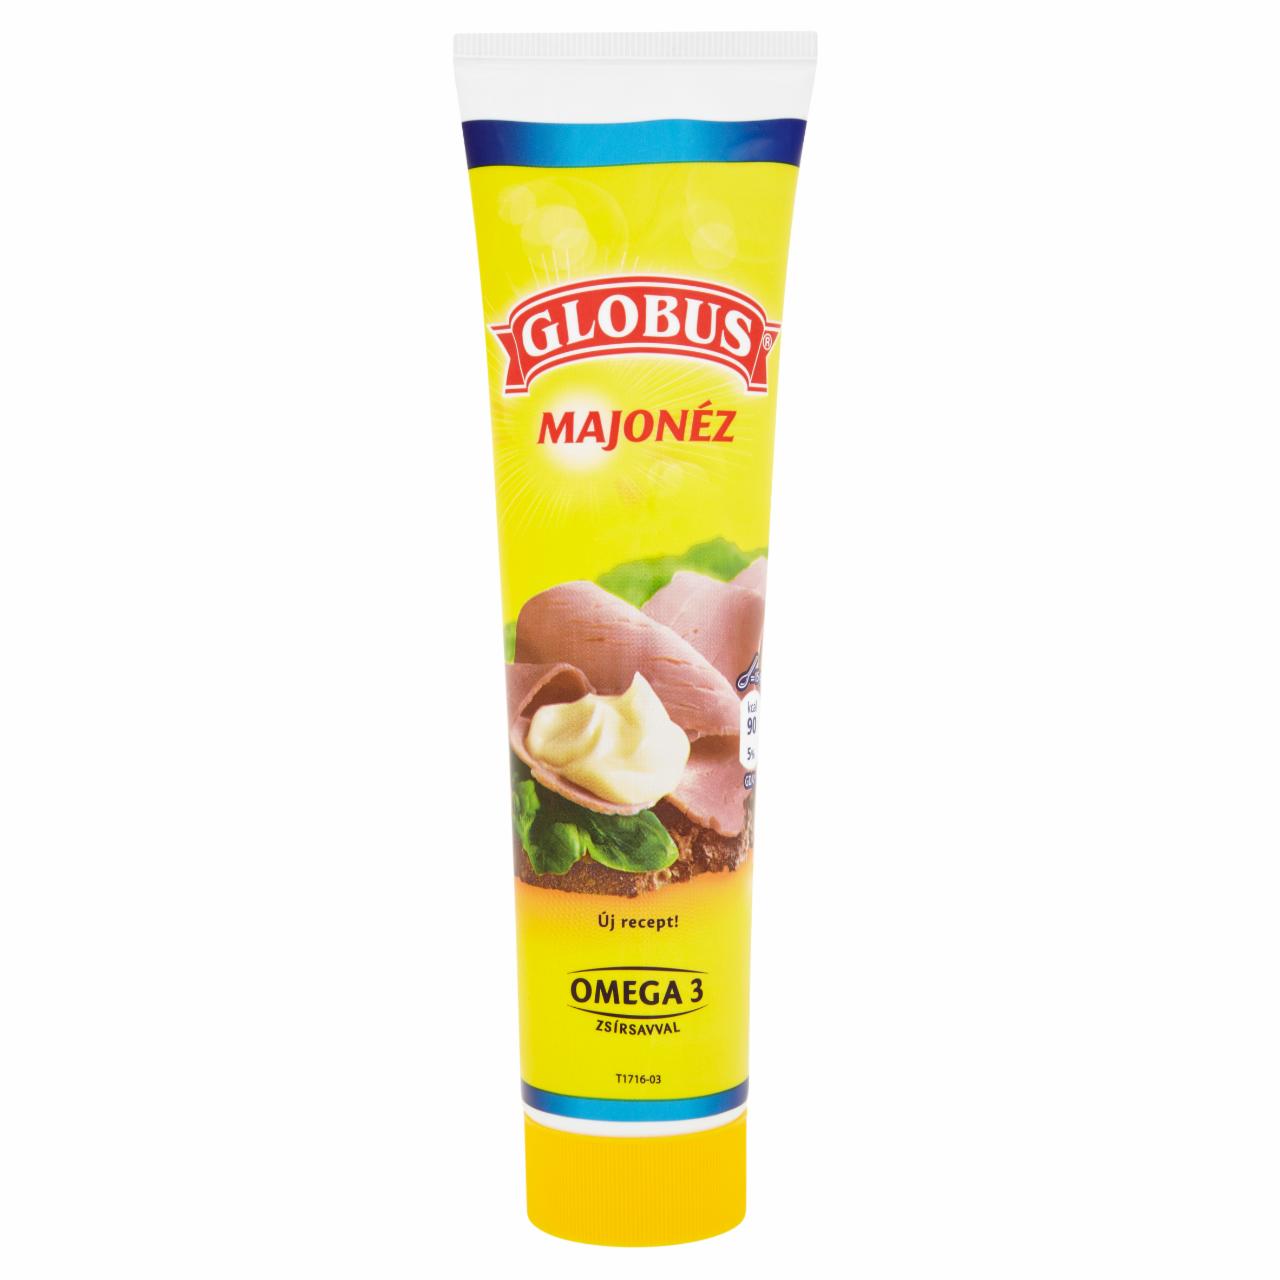 Képek - Globus majonéz 165 g